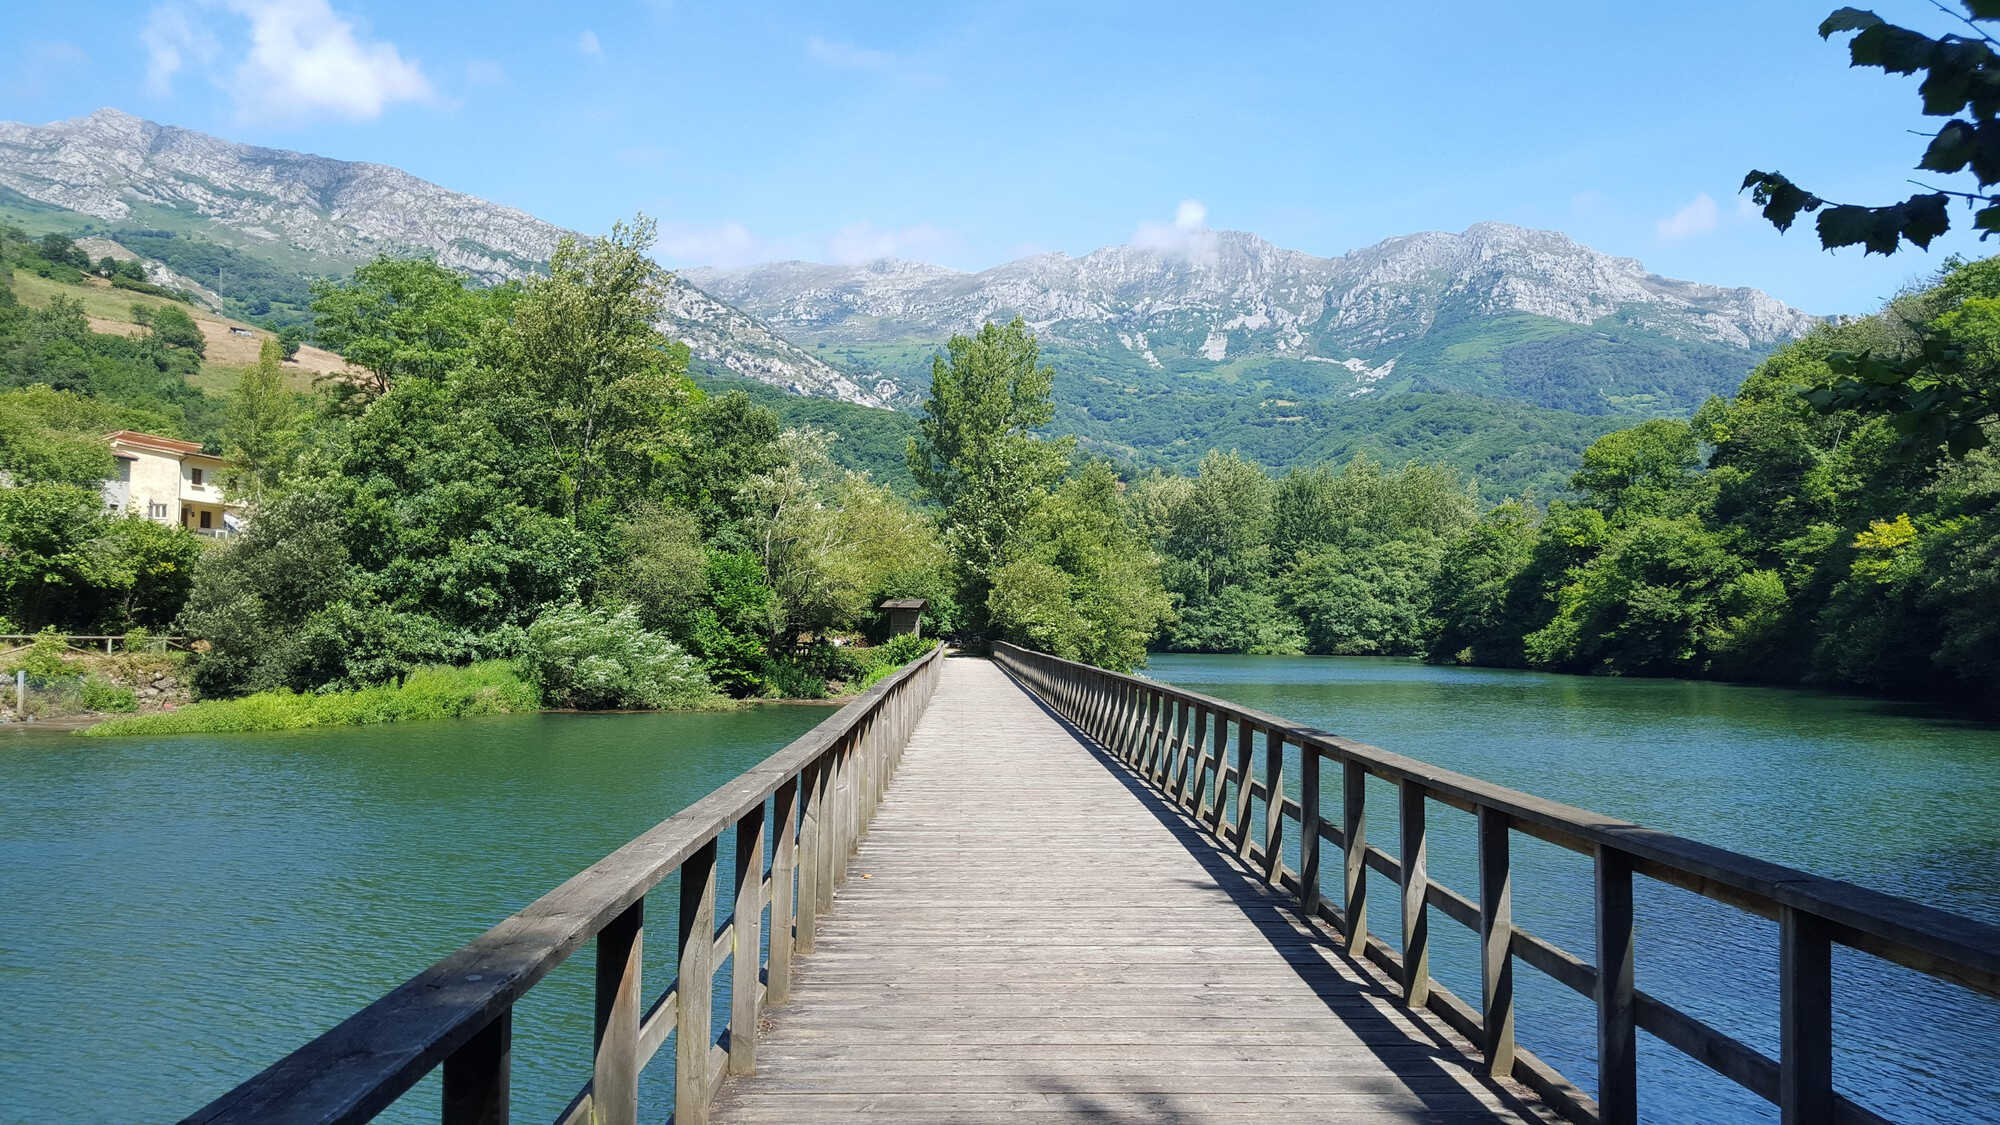 puente sobre lago asturias espana 1 optimized